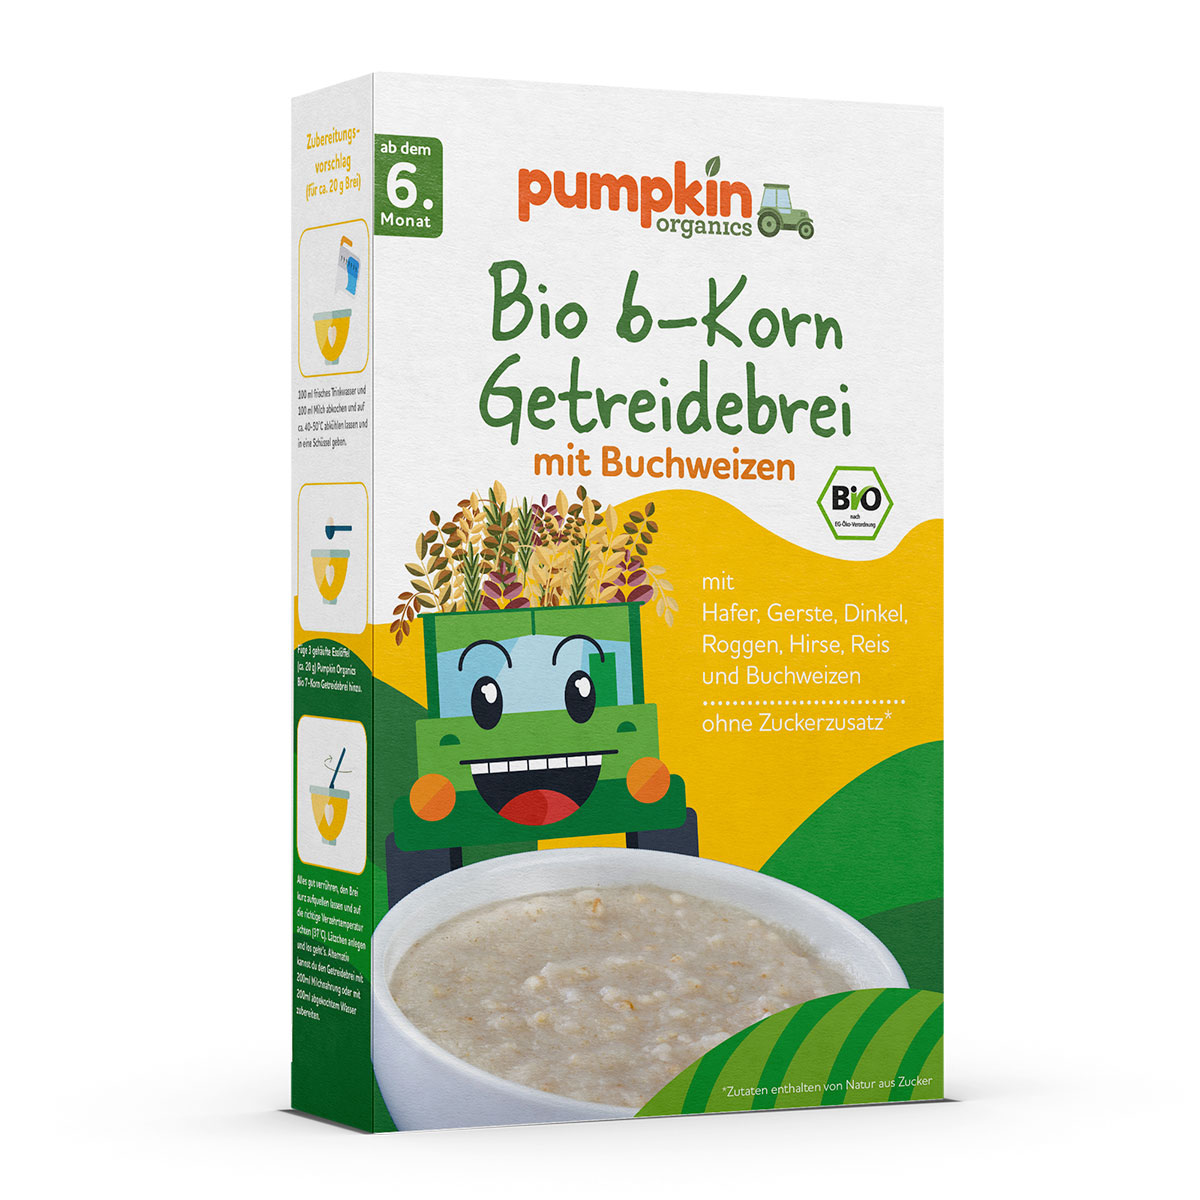 Bio 6-Korn Getreidebrei mit Buchweizen, ab 6. Monat - Pumpkin Organics 200g